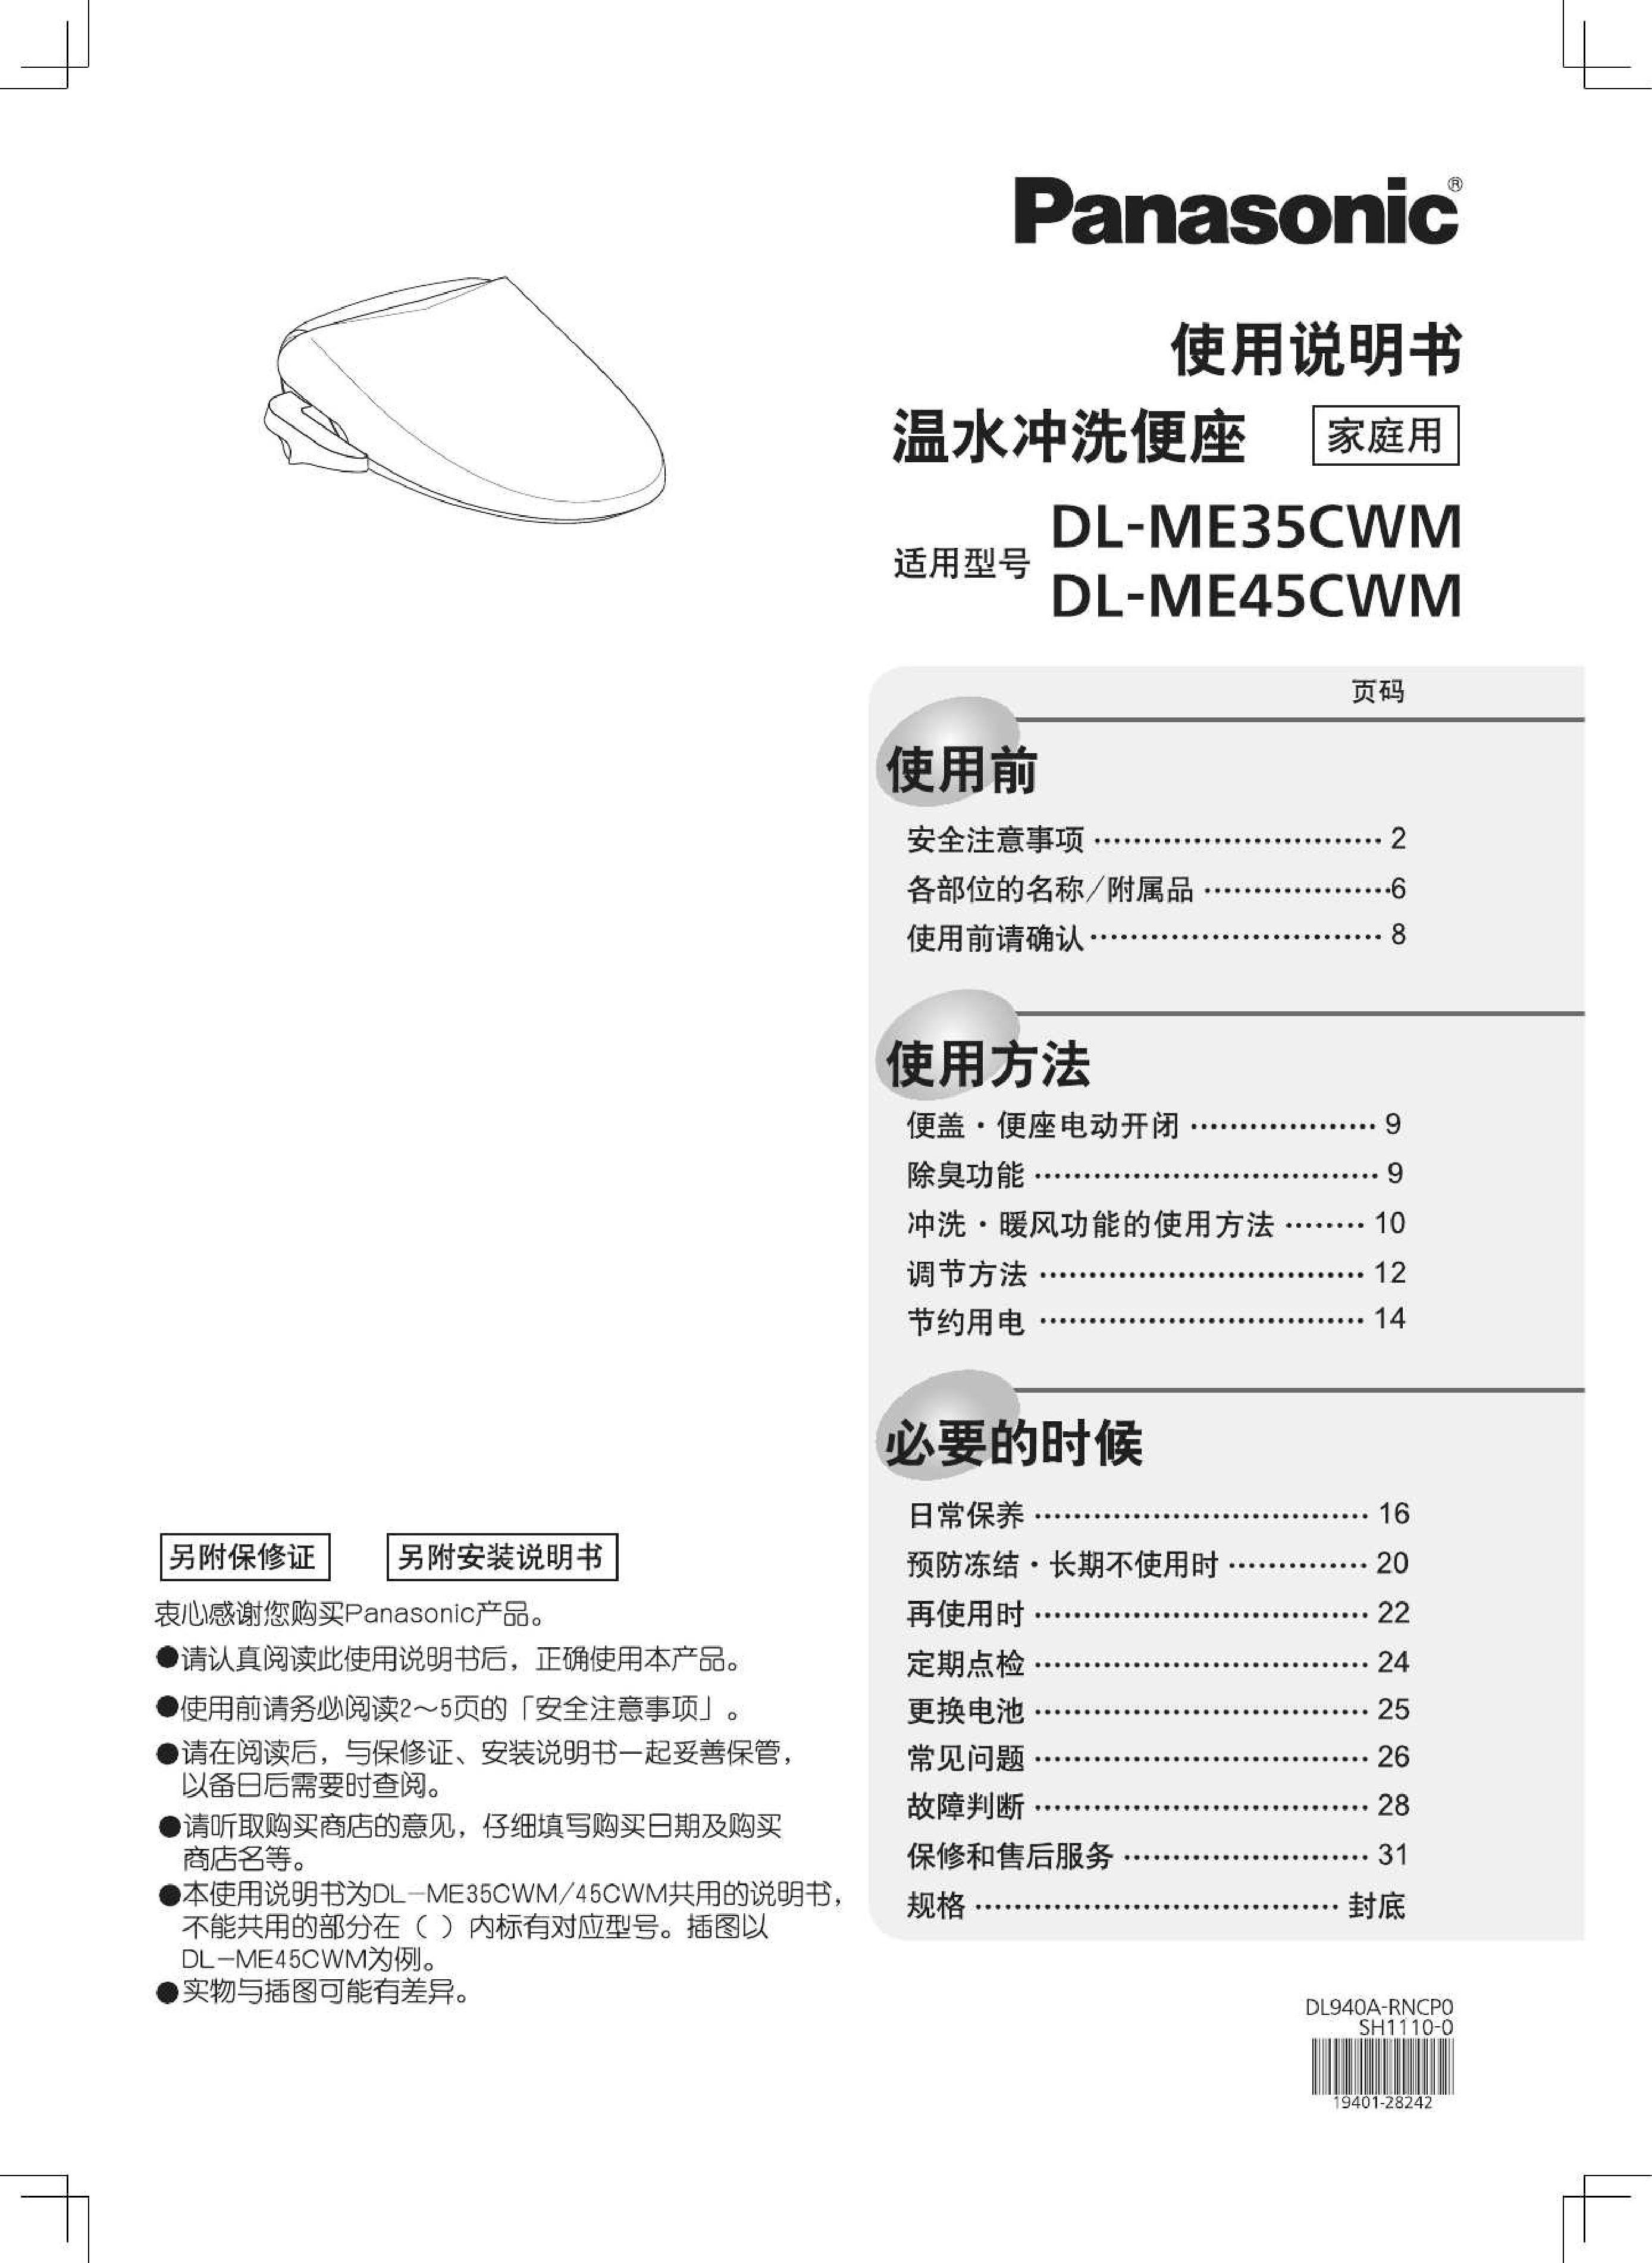 松下 Panasonic DL-ME35CWM 使用说明书 封面